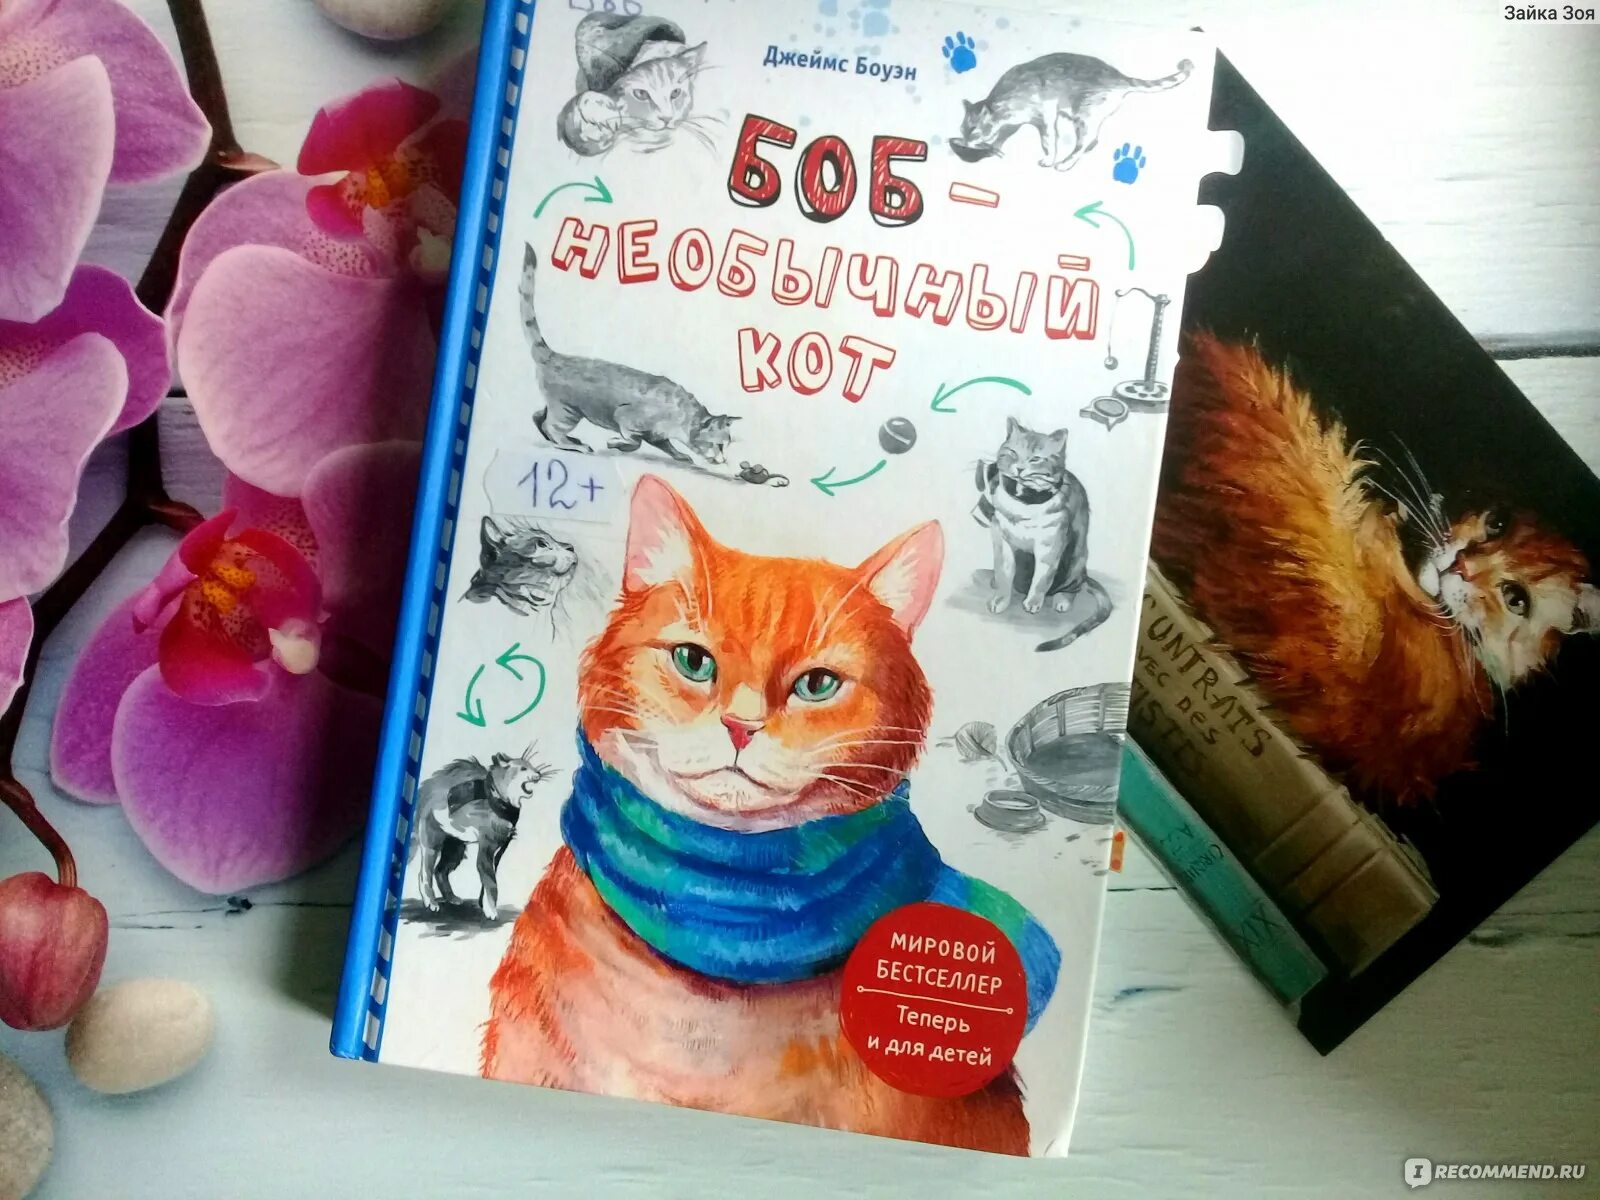 Книга про боба. Книга первая про кота Боба.